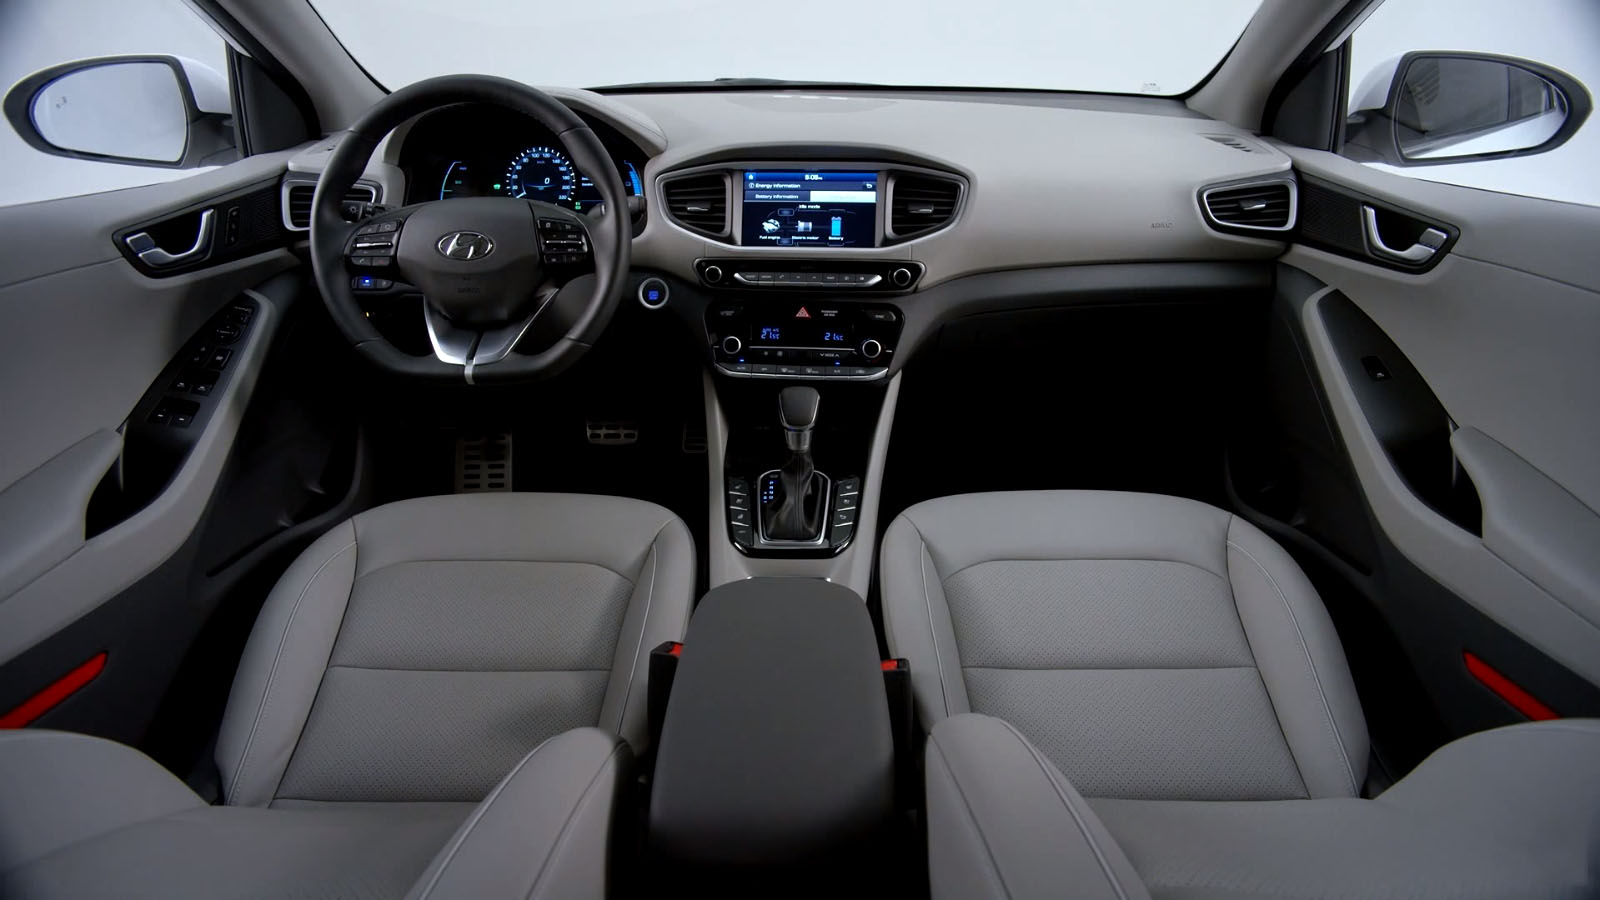 Hyundai Ioniq Electric Hybrid interior front view